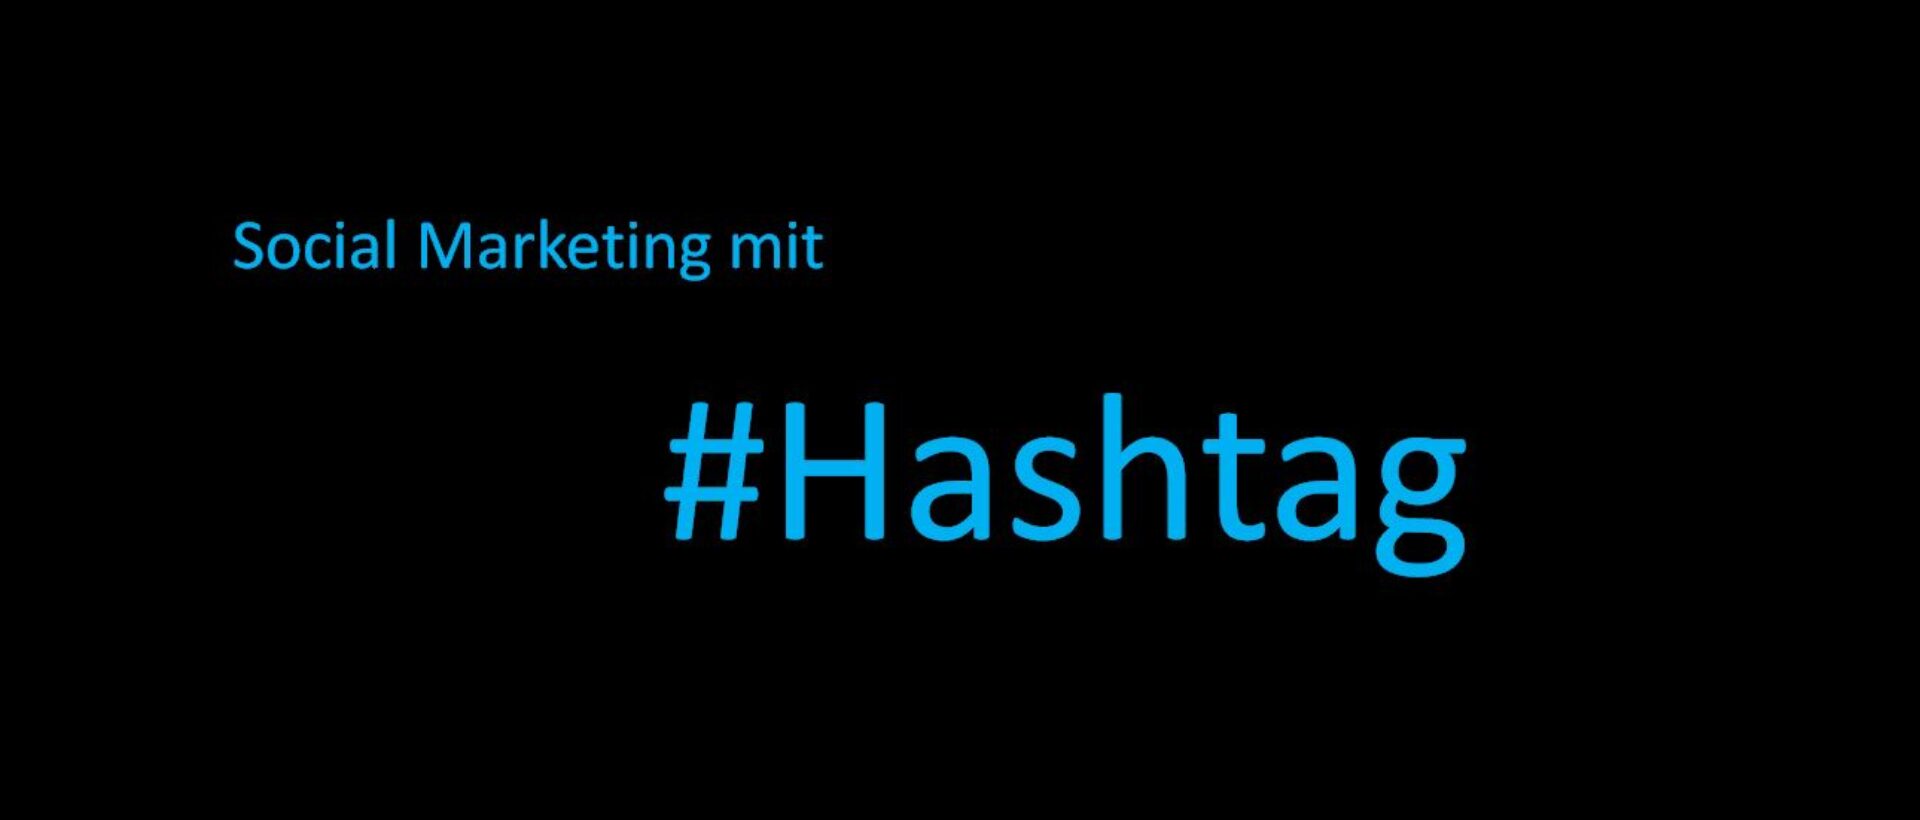 Übersicht zur Nutzung von Hashtags im Social Media Marketing